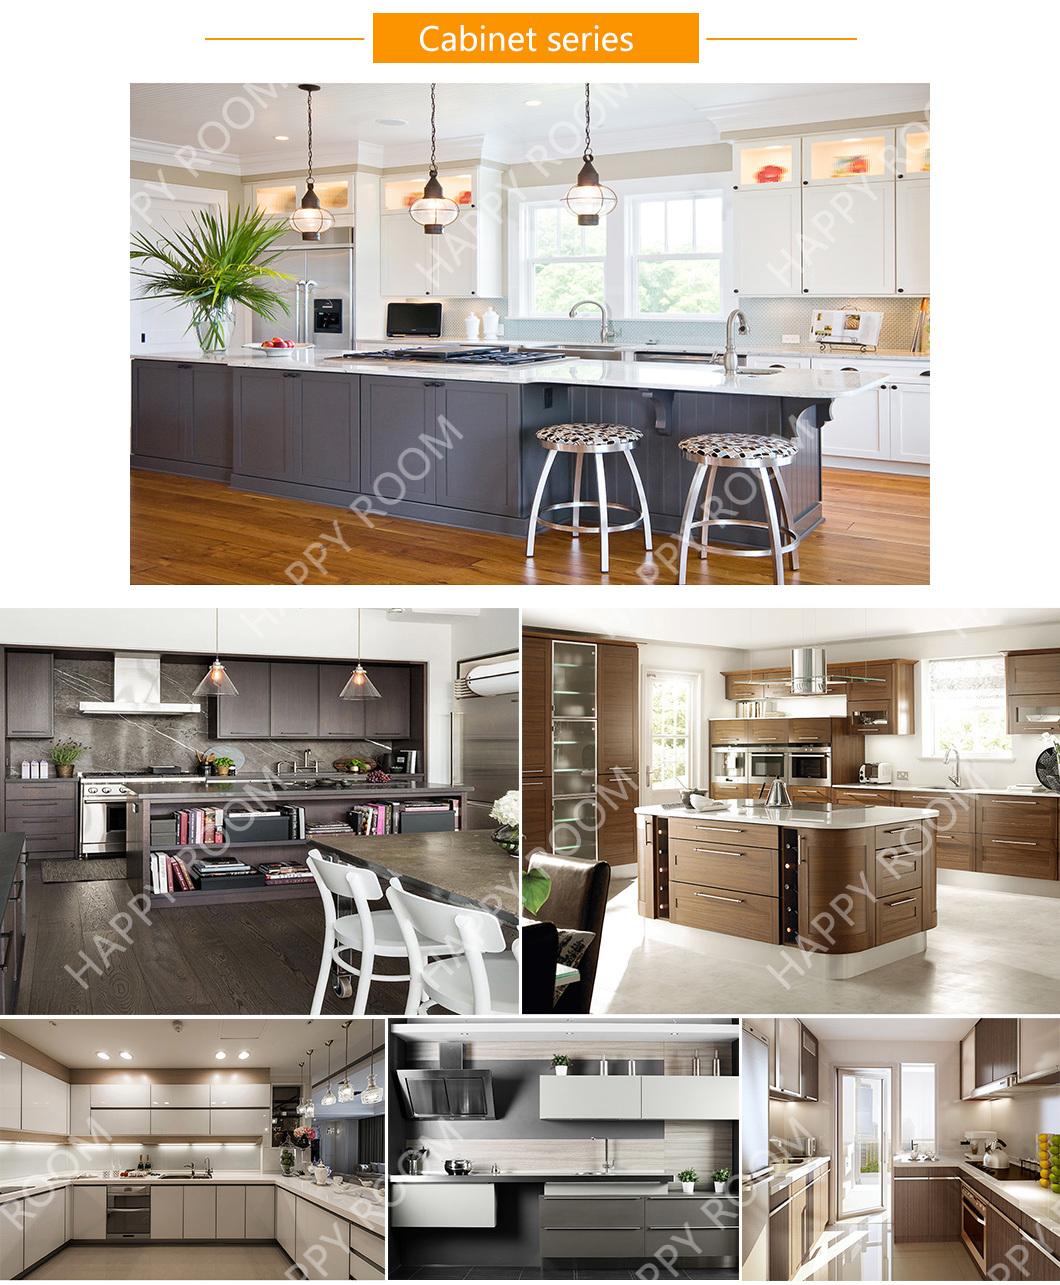 2021 Happyroom Manufacturer Custom Made High Quality Aluninum/Aluminium Kitchen Cabinet Furniture